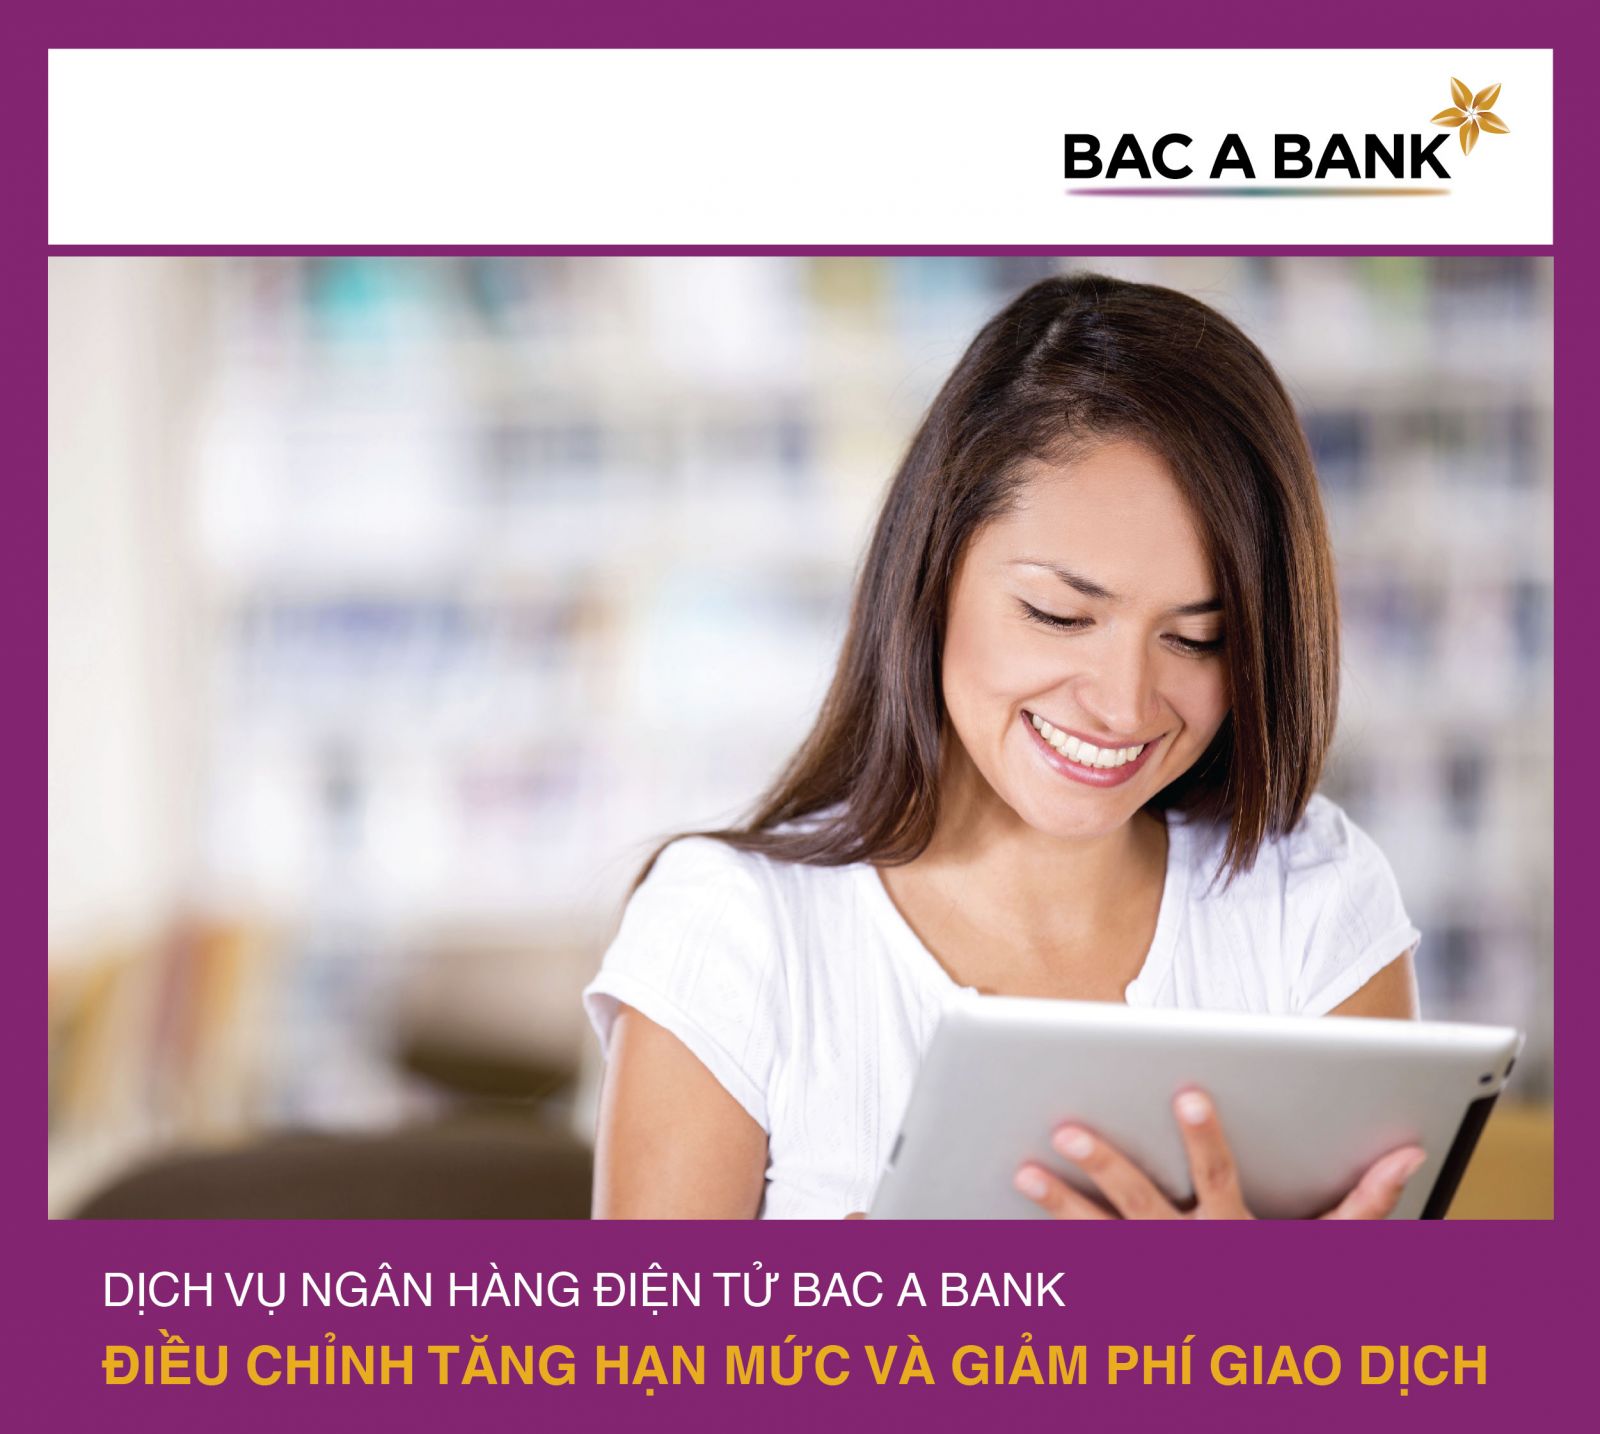 Ngân hàng TMCP Bắc Á (BAC A BANK) mới đây đã điều chỉnh biểu phí để giảm thiểu chi phí phát sinh trên giao dịch của khách hàng.